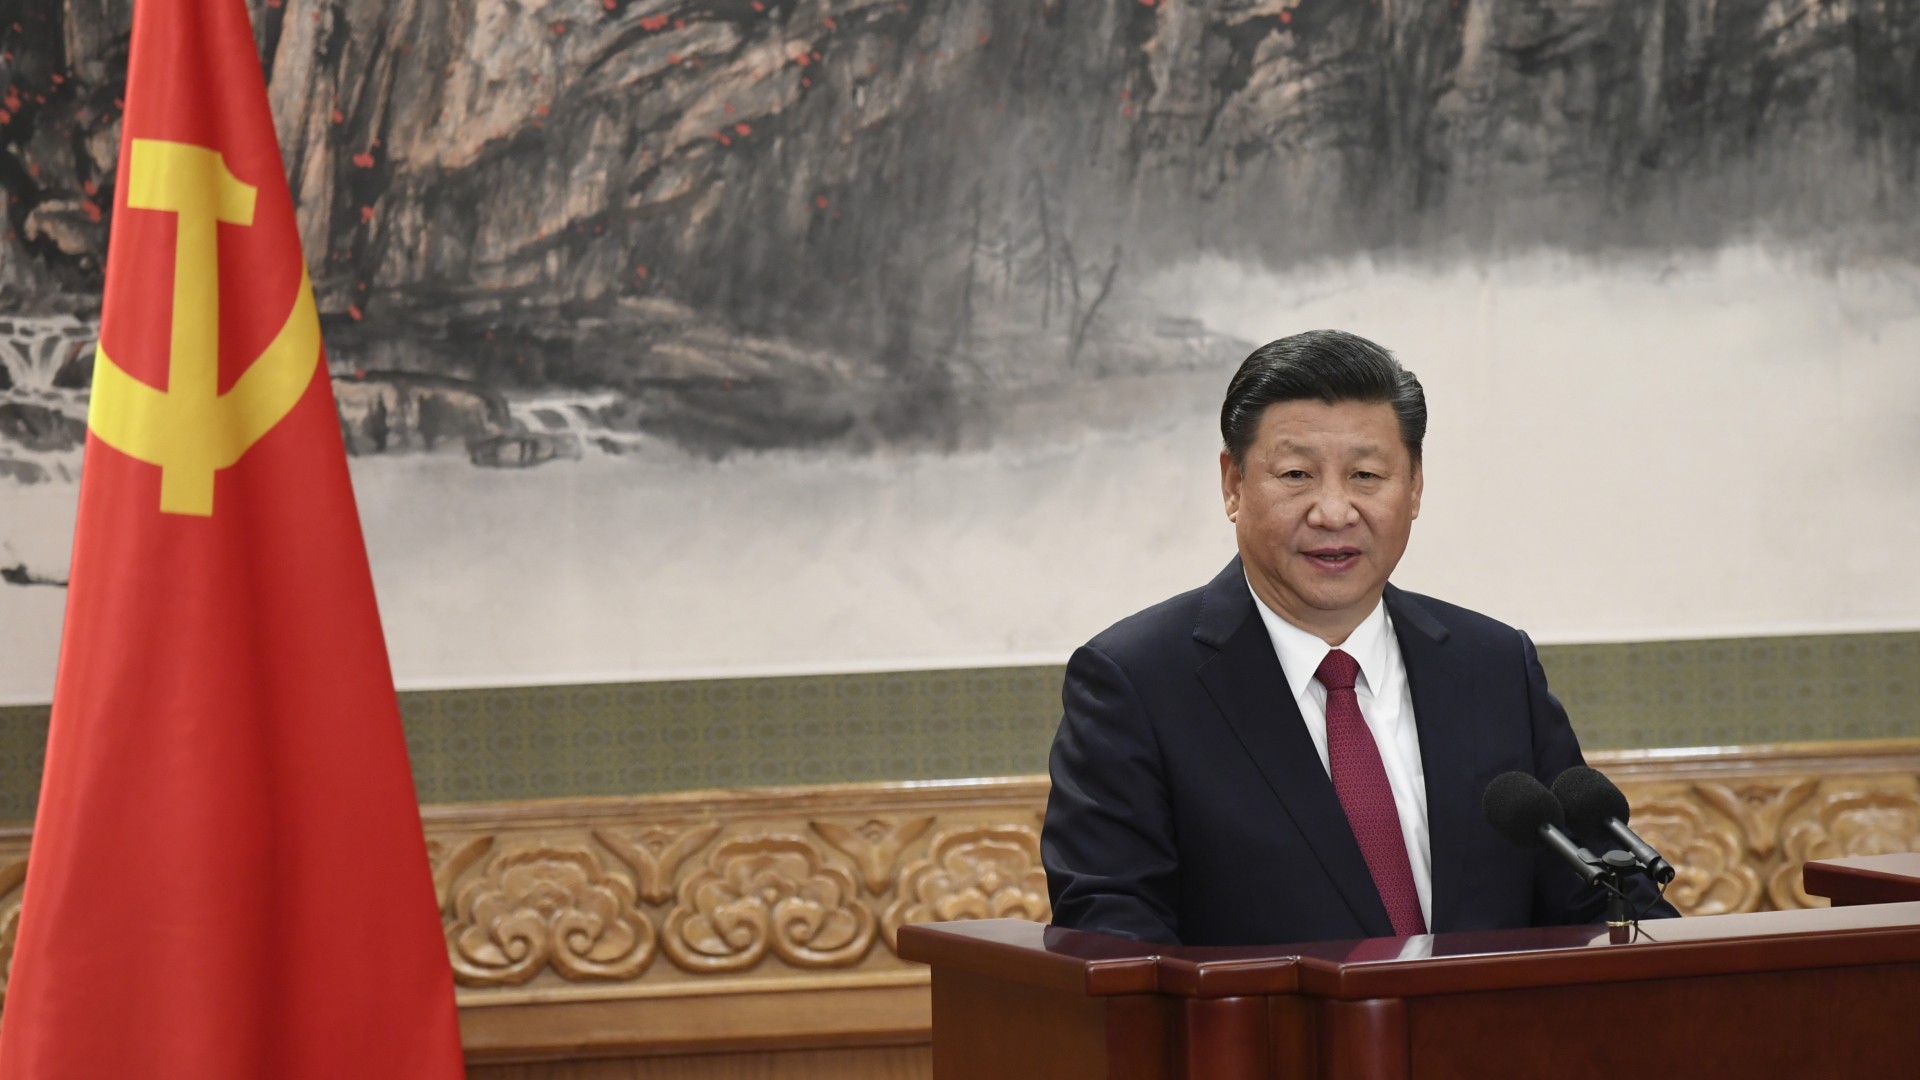 Xi Jinping revalida su mandato como líder del Partido Comunista Chino